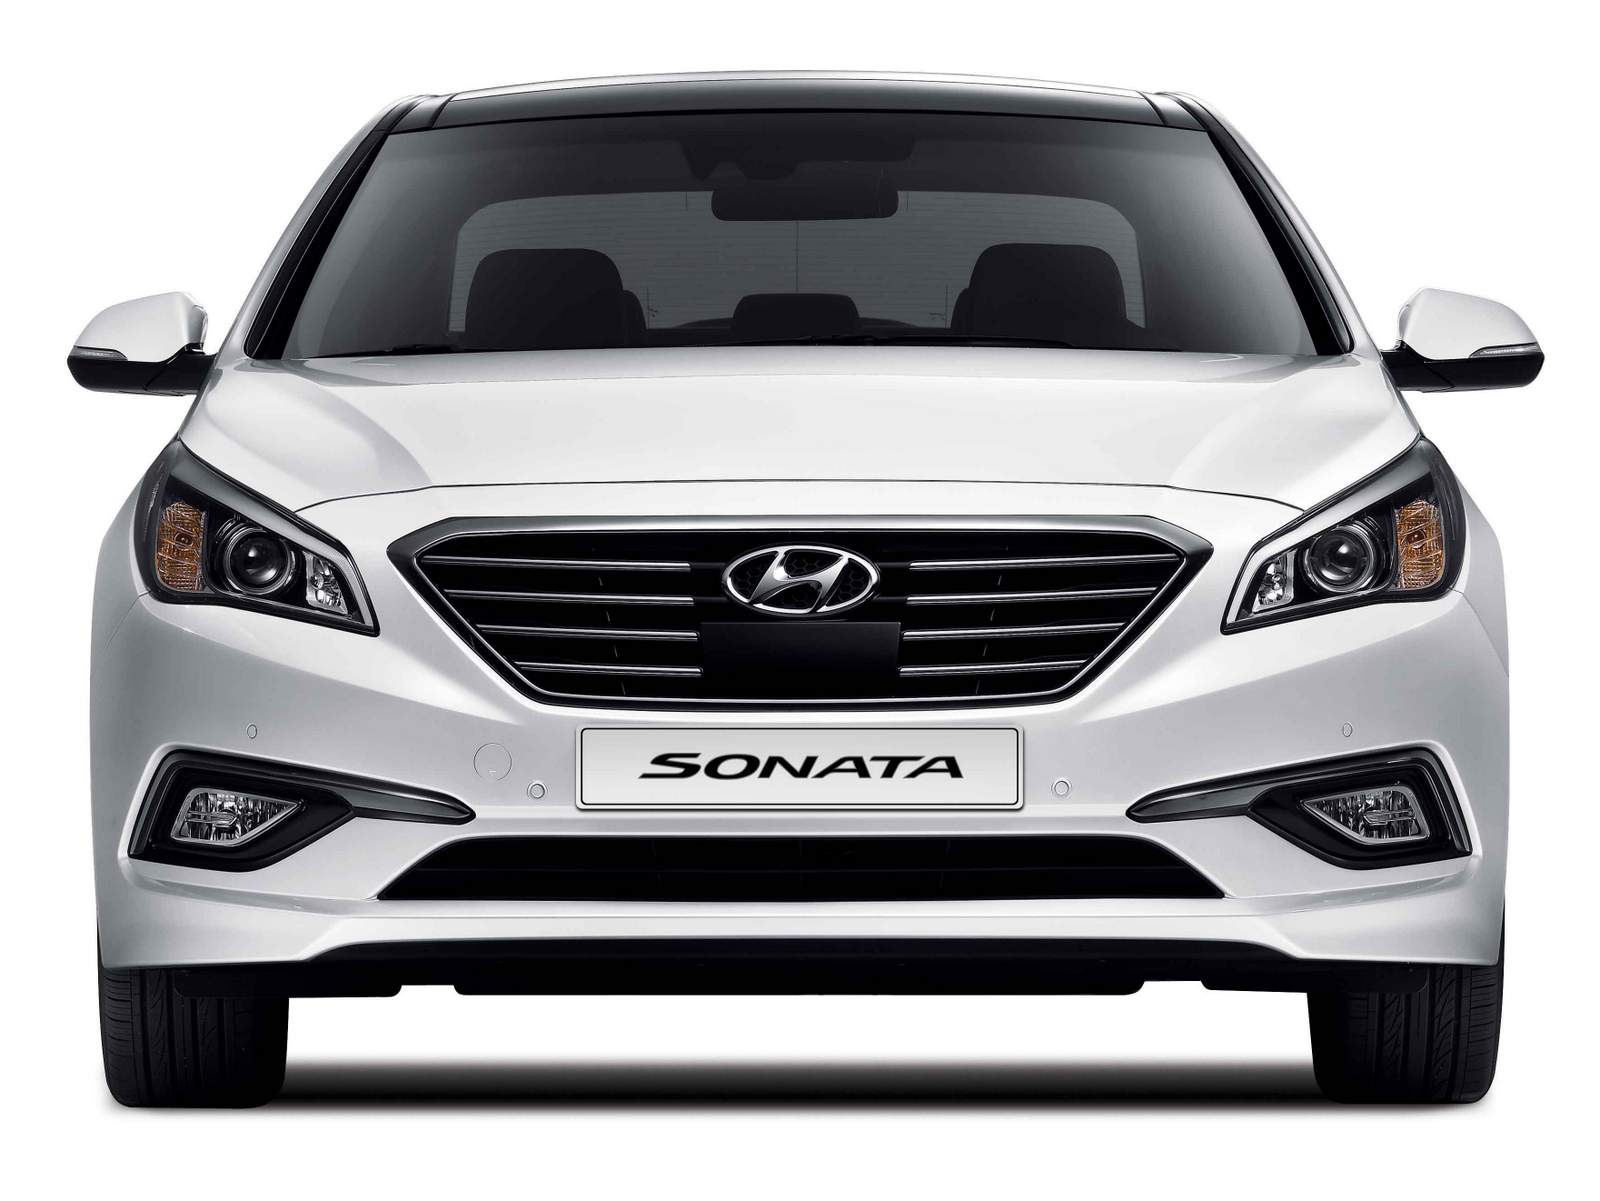 Novo Hyundai Sonata 2015: fotos, vídeos e especificações